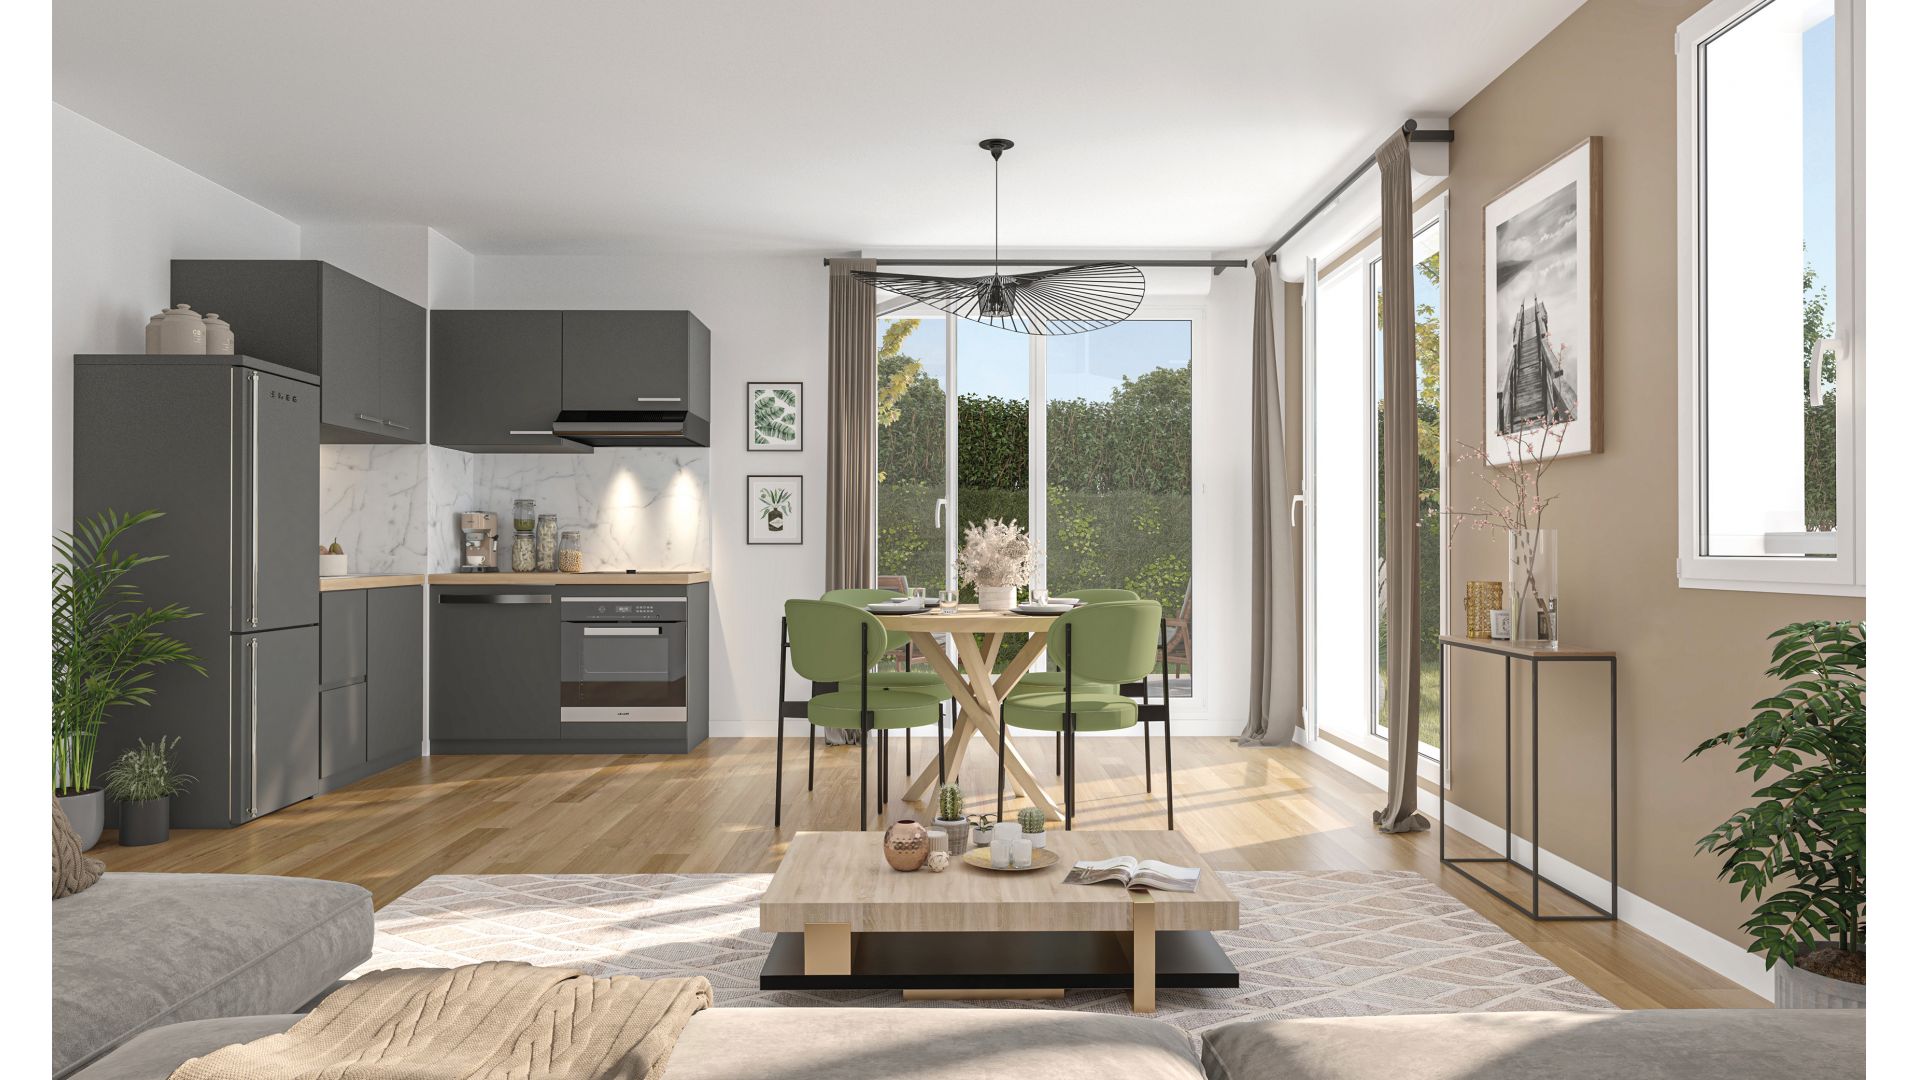 Greencity immobilier - achat appartements neufs du T1Bis  au T3Bis - Villas T5  - Résidence Ondulation - Limay 78520